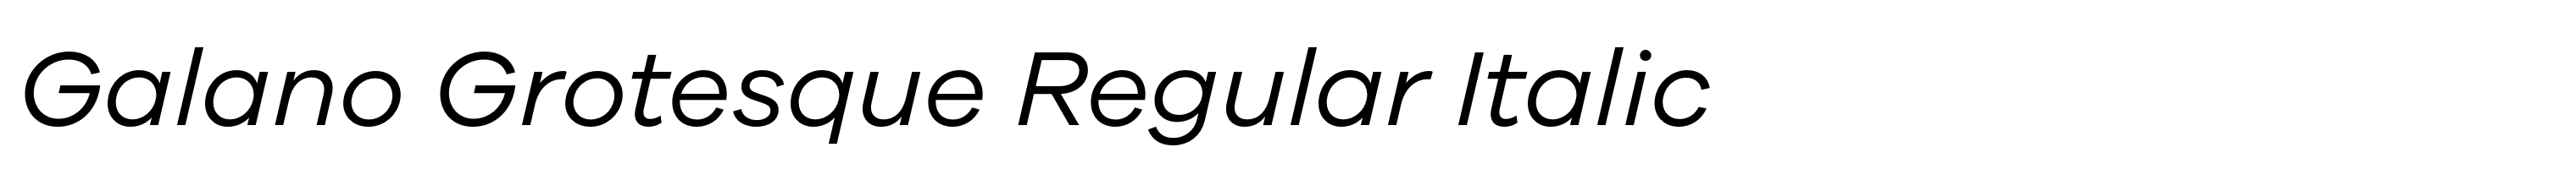 Galano Grotesque Regular Italic